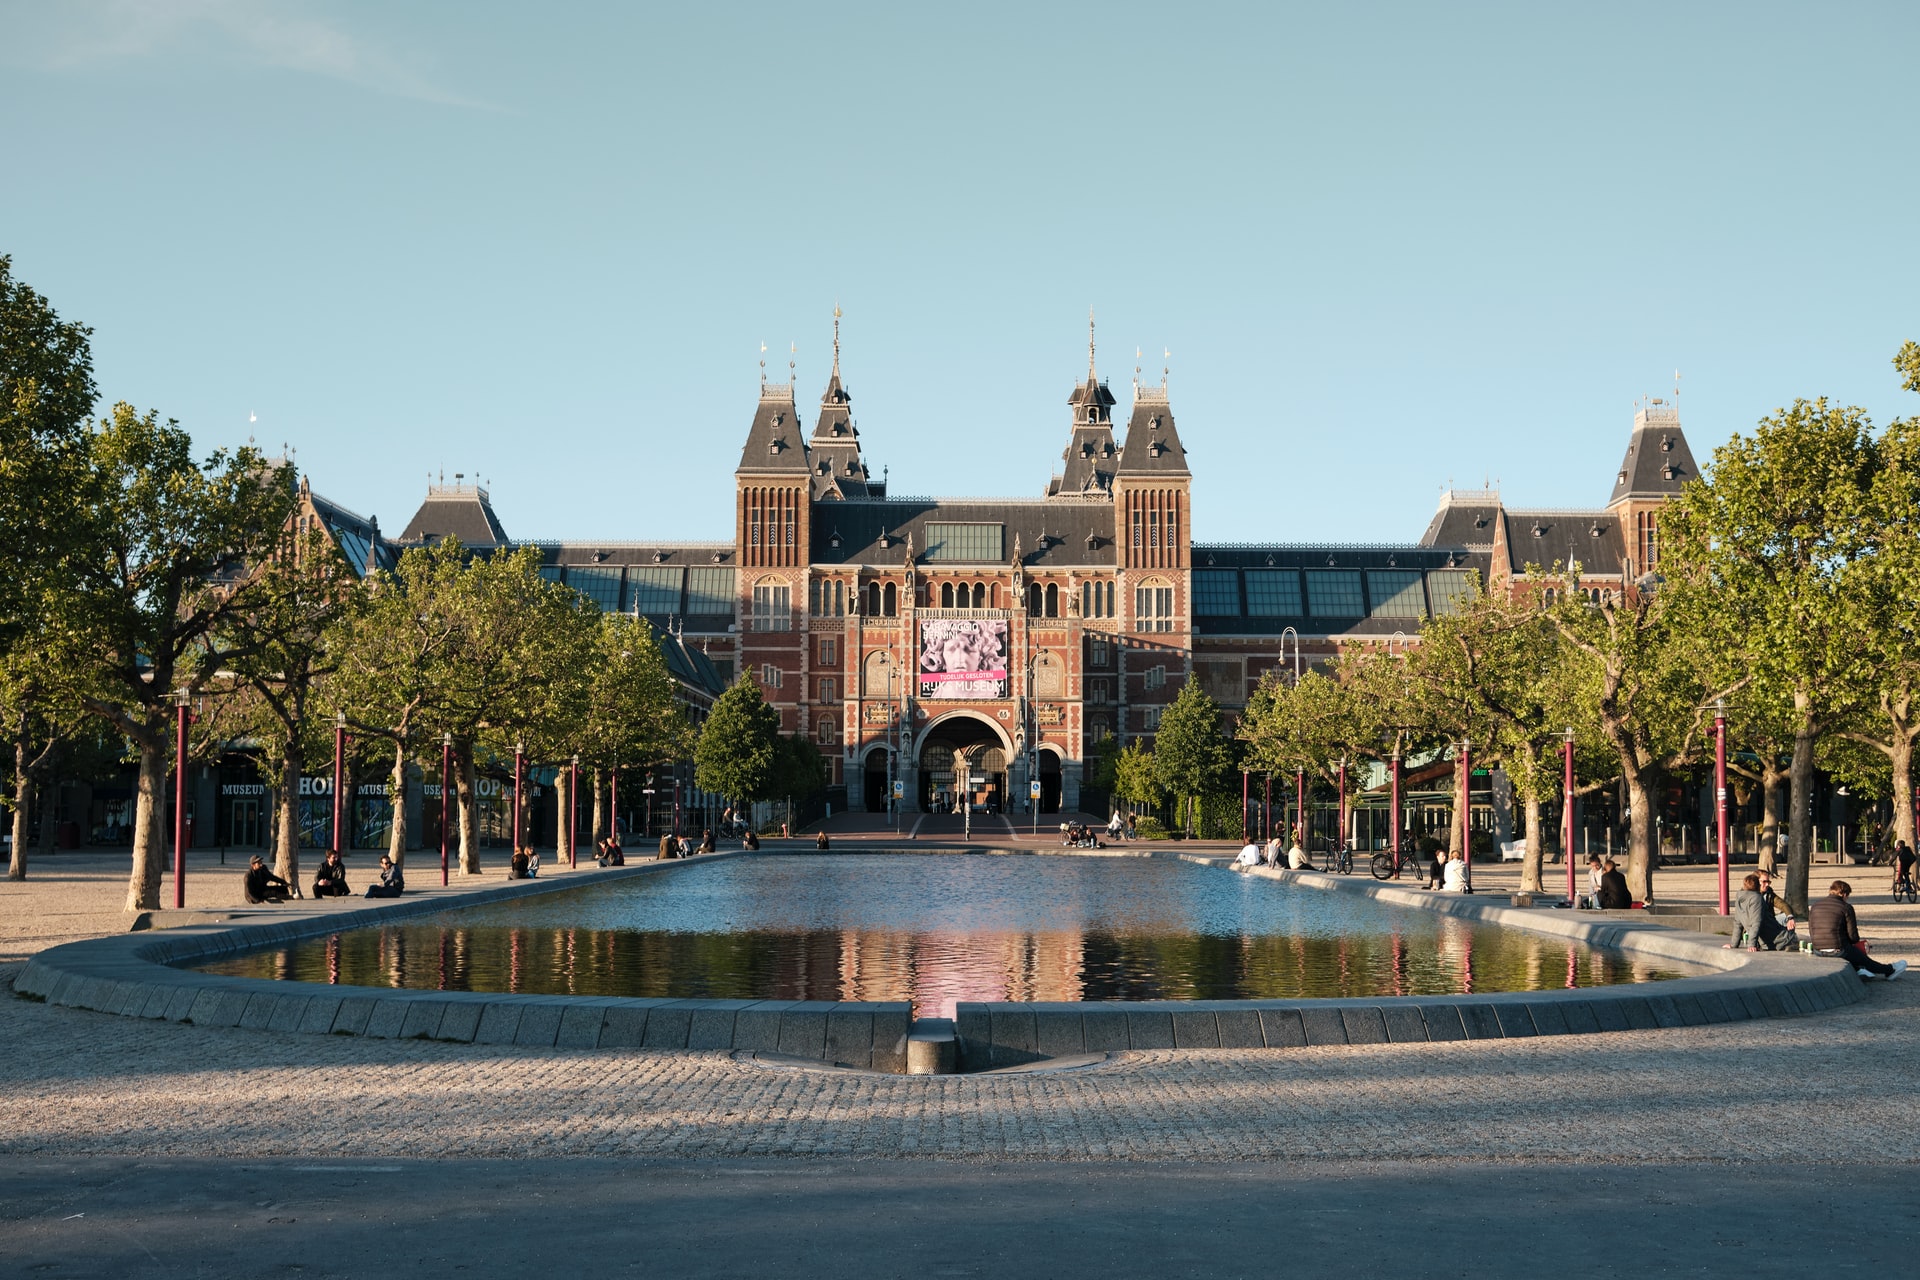 Amb el Vondelpark i alguns dels museus més famosos d'Europa al seu interior, Oud Zuid és un districte exclusiu ple d'atraccions per a tota la família.